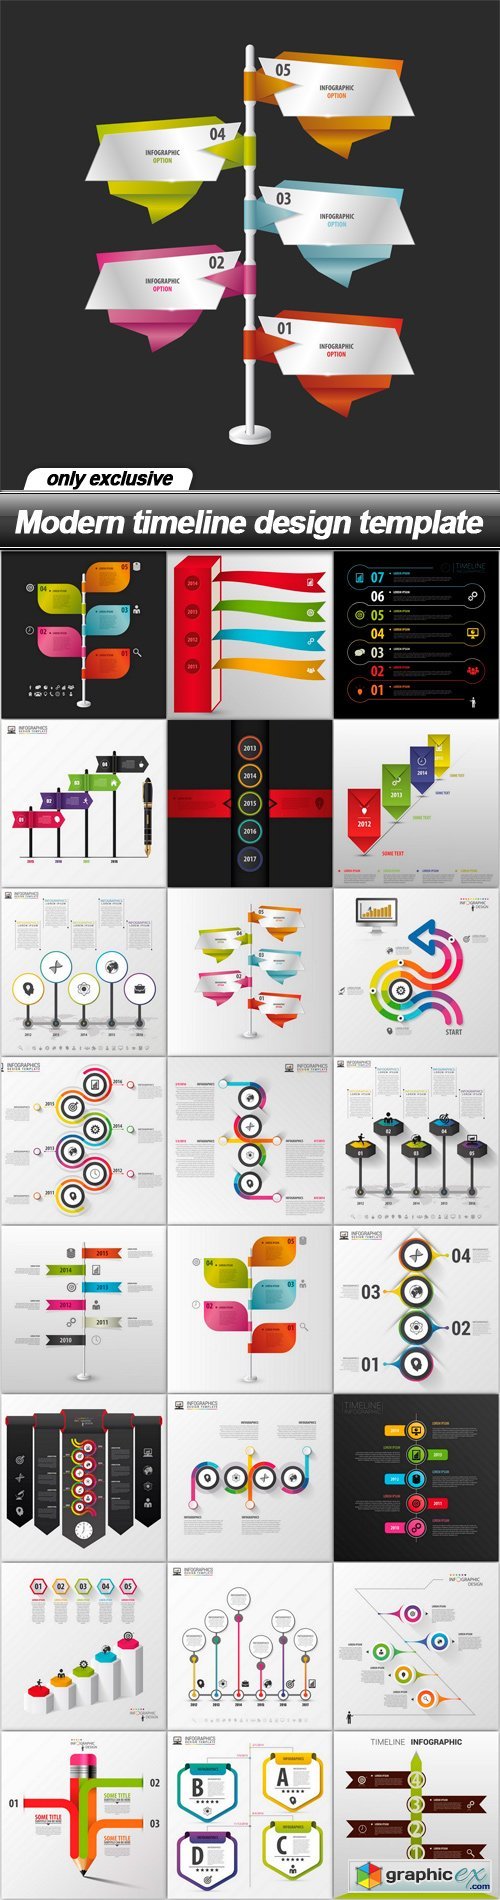 Modern timeline design template - 25 EPS